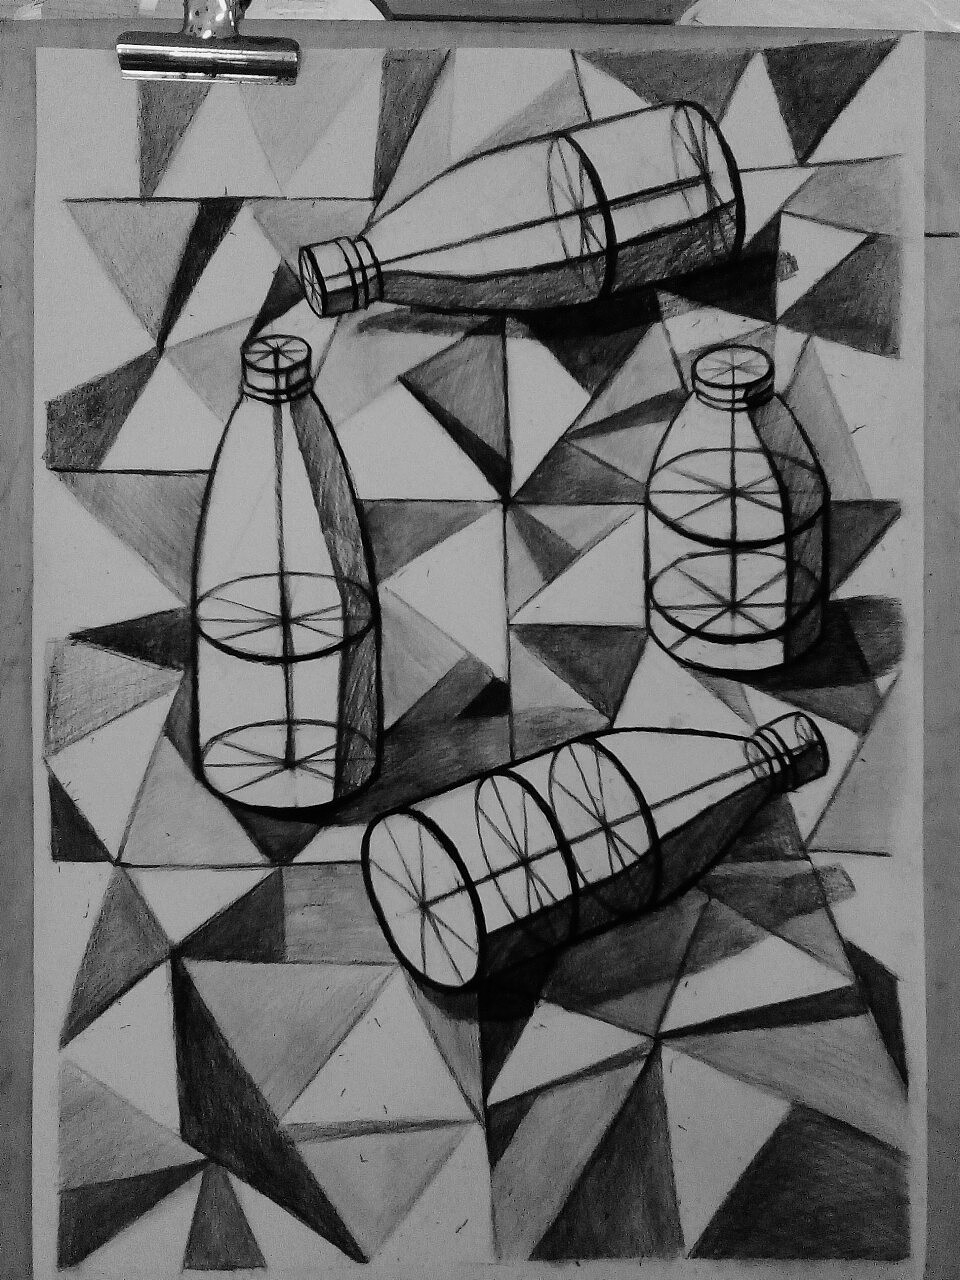 结构素描,以瓶子为主体,运用o型构图,加上创意性的地砖,东莞